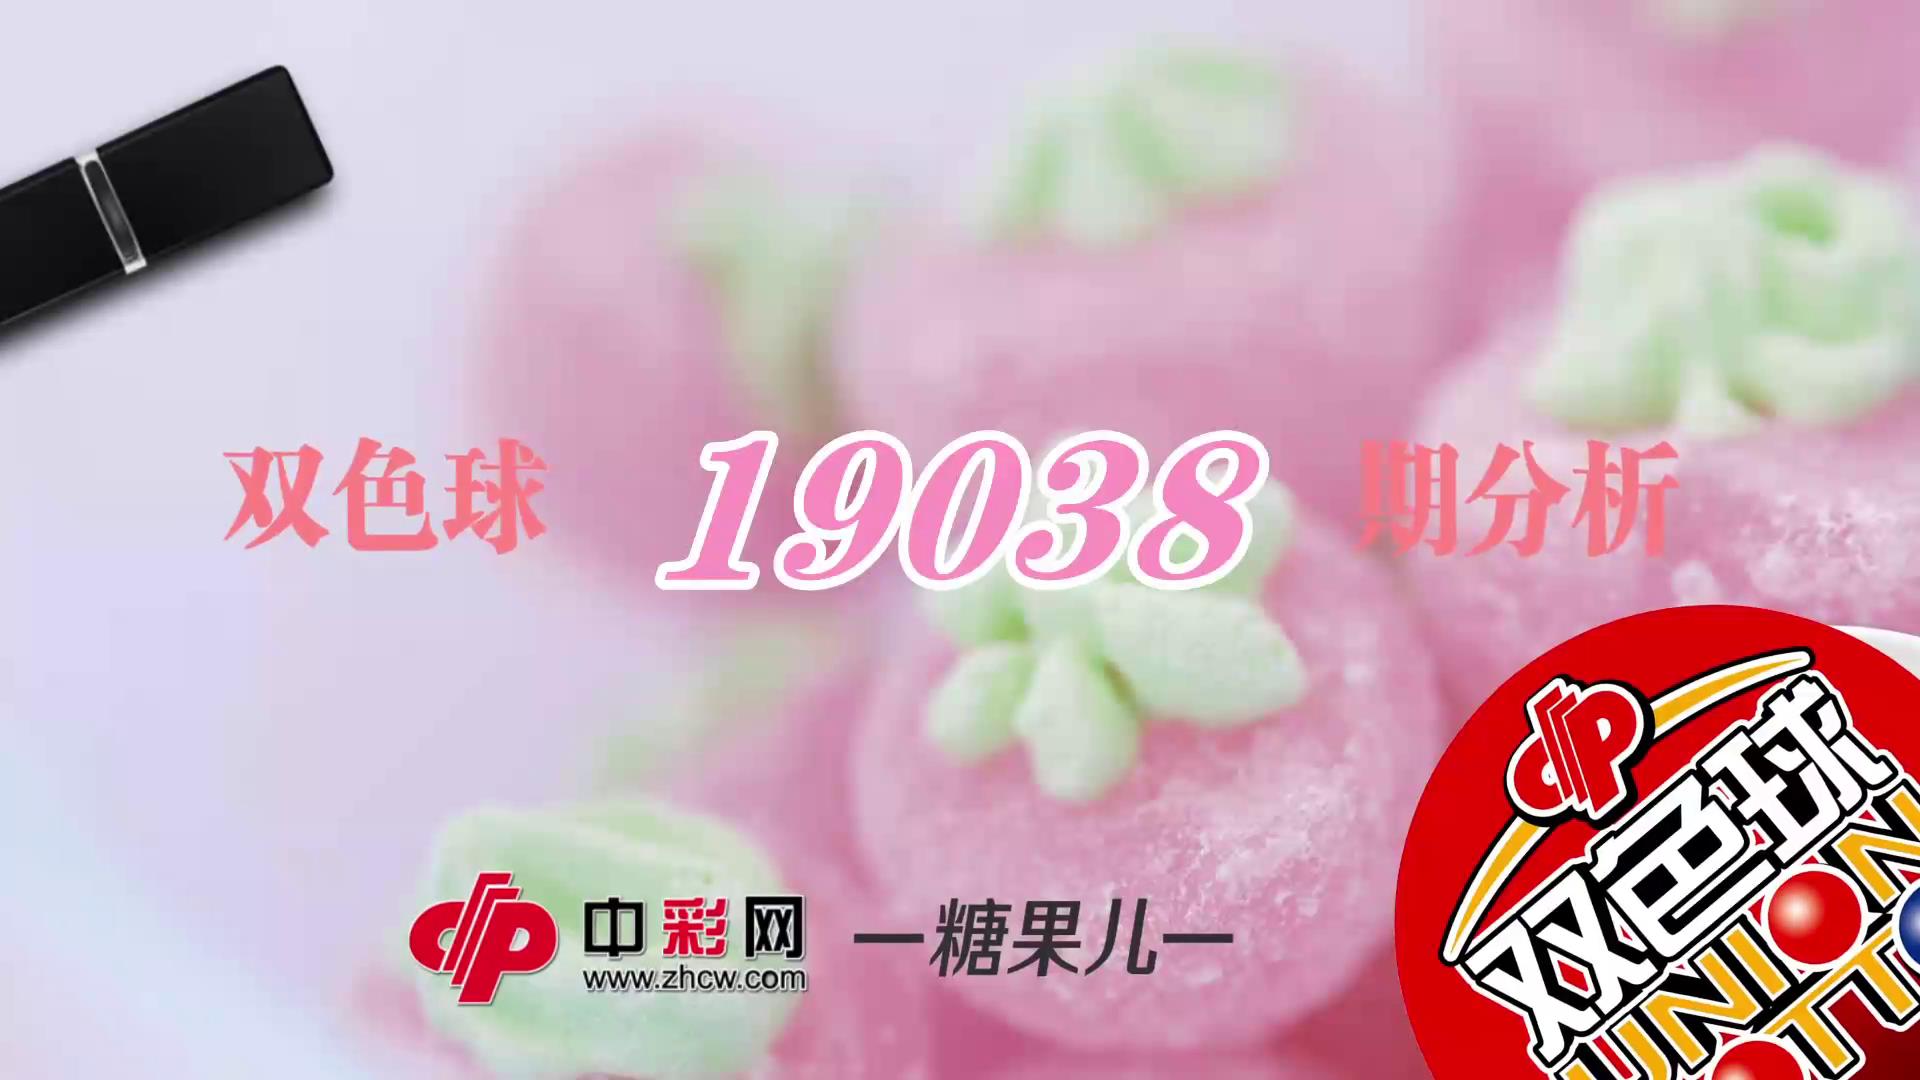 【中彩视频】糖果儿双色球第19038期